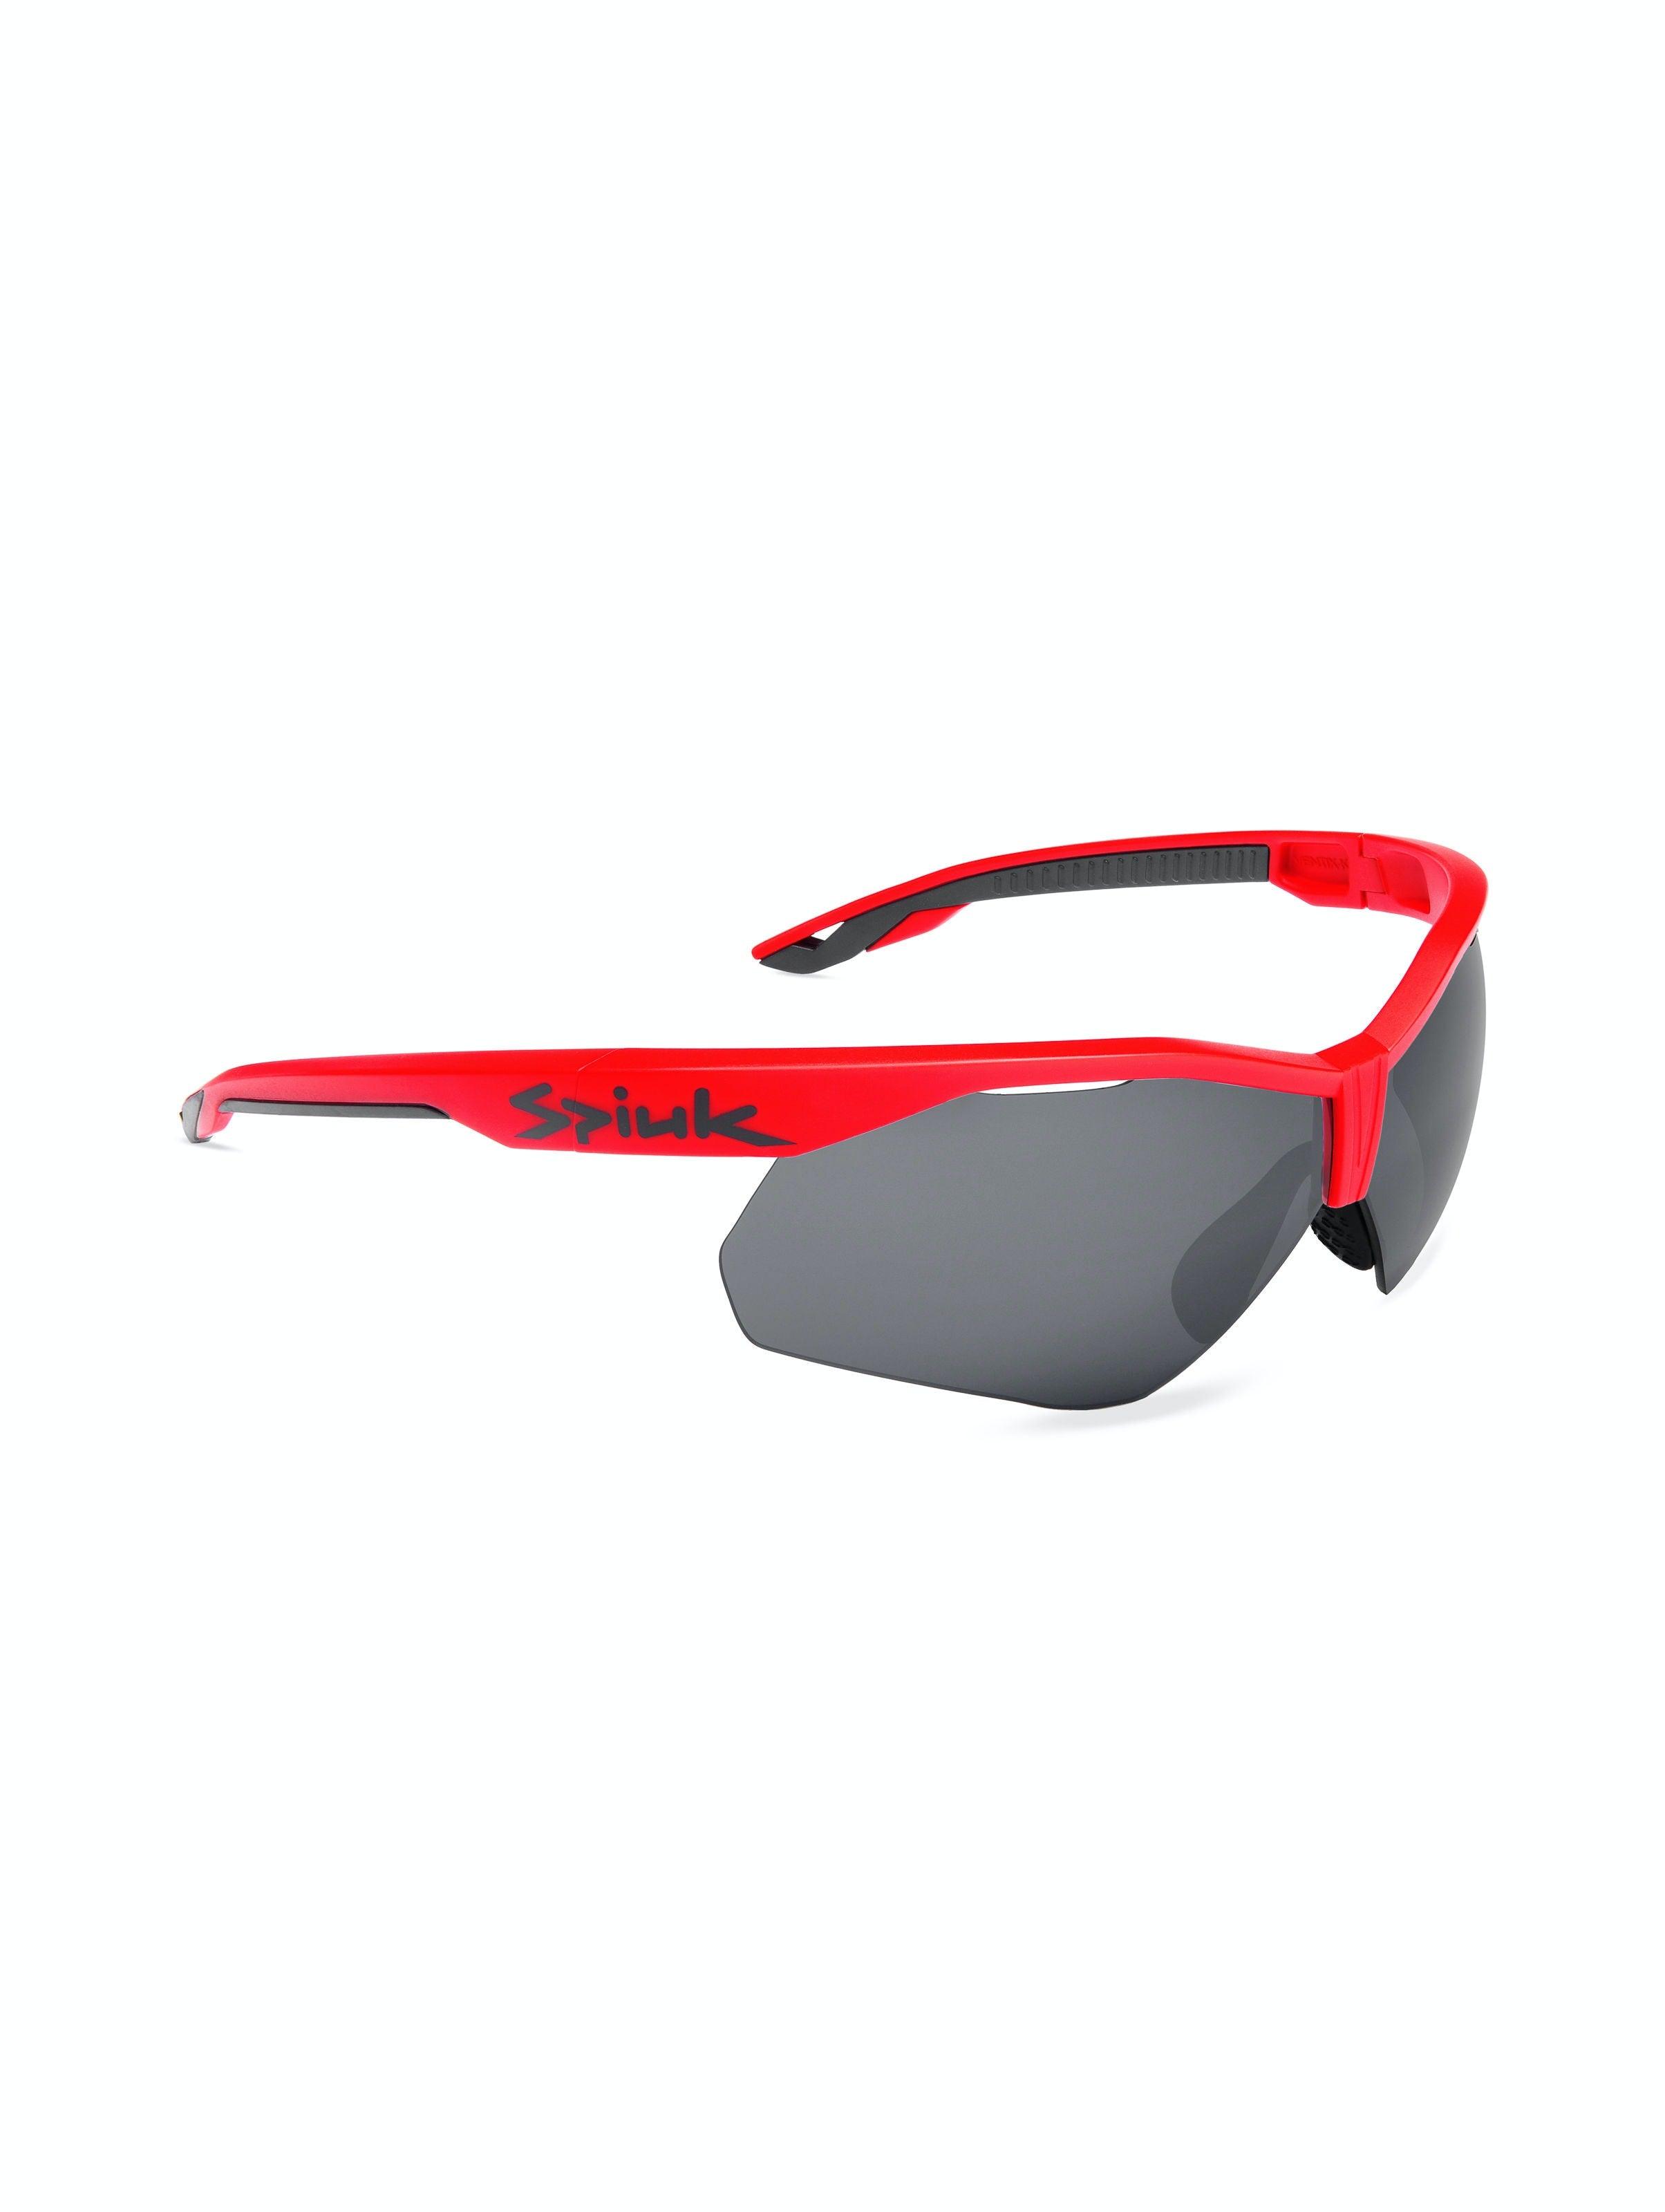 Gafas de Ciclismo Spiuk Ventix-K Rojo/Negro - CYCLEWEAR Tienda de Ciclismo